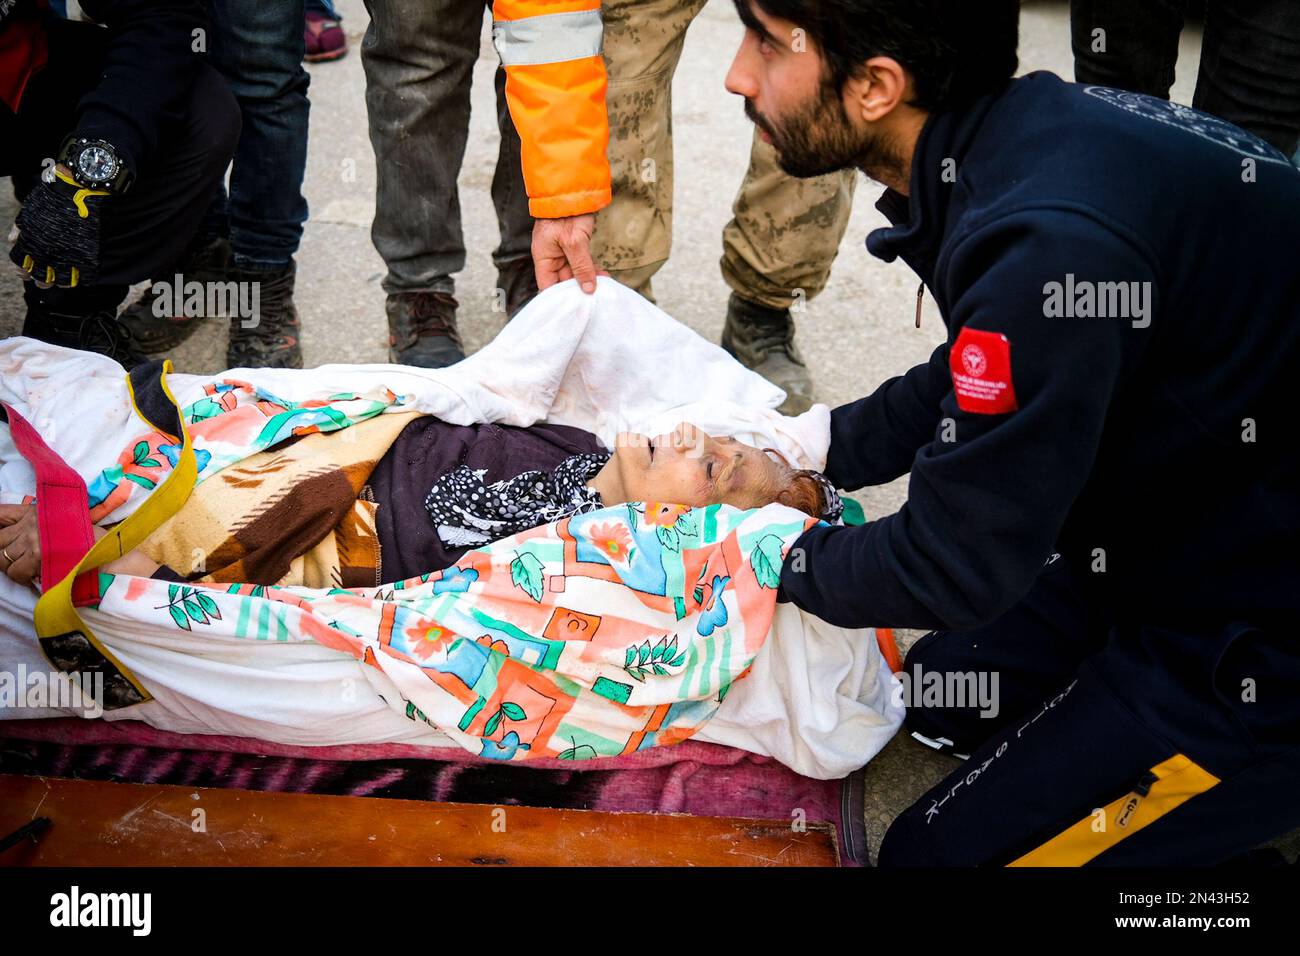 Hatay, Antakya, Türkei. 1. Januar 2020. Eine 65-jährige Frau, die aus den Trümmern gezogen wurde, wird in den Krankenwagen getragen. Die Menschen bitten um mehr Hilfe im Antakya-Viertel Hatay, einer der Städte, in denen die größten Trümmer erlebten. Die Türkei erlebte das größte Erdbeben dieses Jahrhunderts in der Grenzregion zu Syrien. Das Erdbeben wurde bei 7,7 gemessen. (Kreditbild: © Murat Kocabas/SOPA Images via ZUMA Press Wire) NUR REDAKTIONELLE VERWENDUNG! Nicht für den kommerziellen GEBRAUCH! Stockfoto